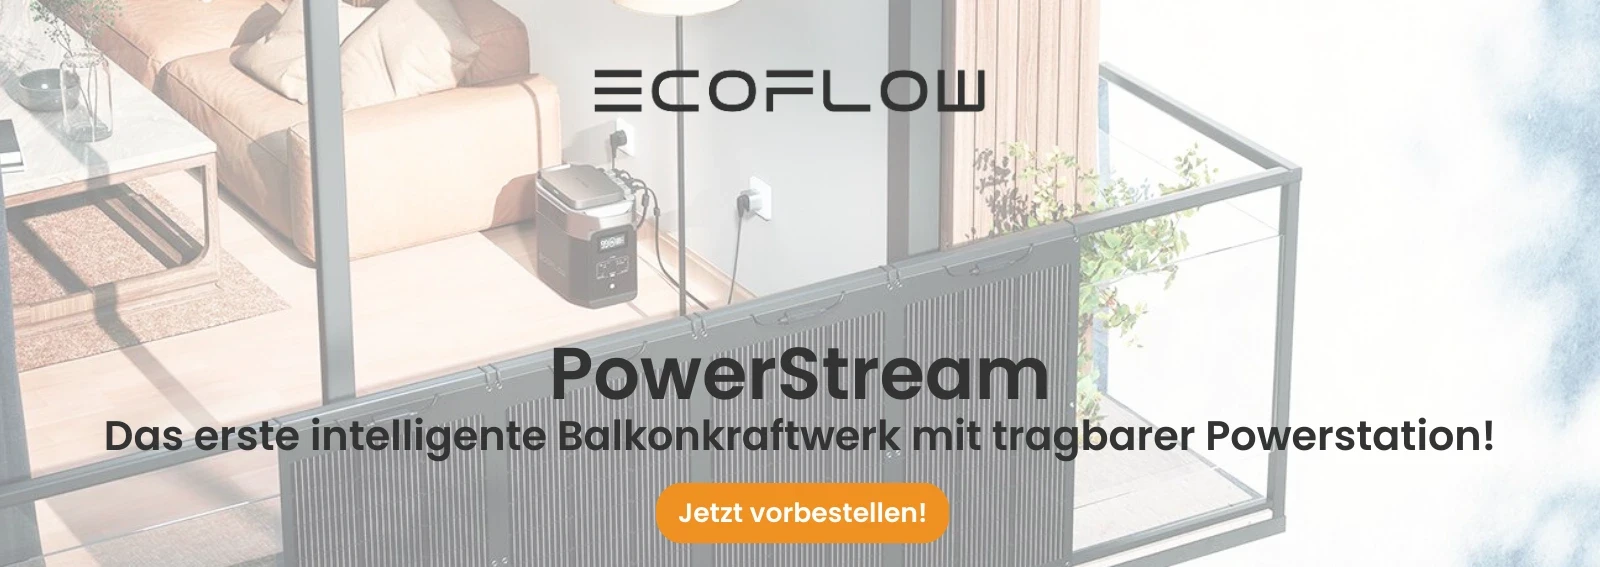 EcoFlow Powerstream